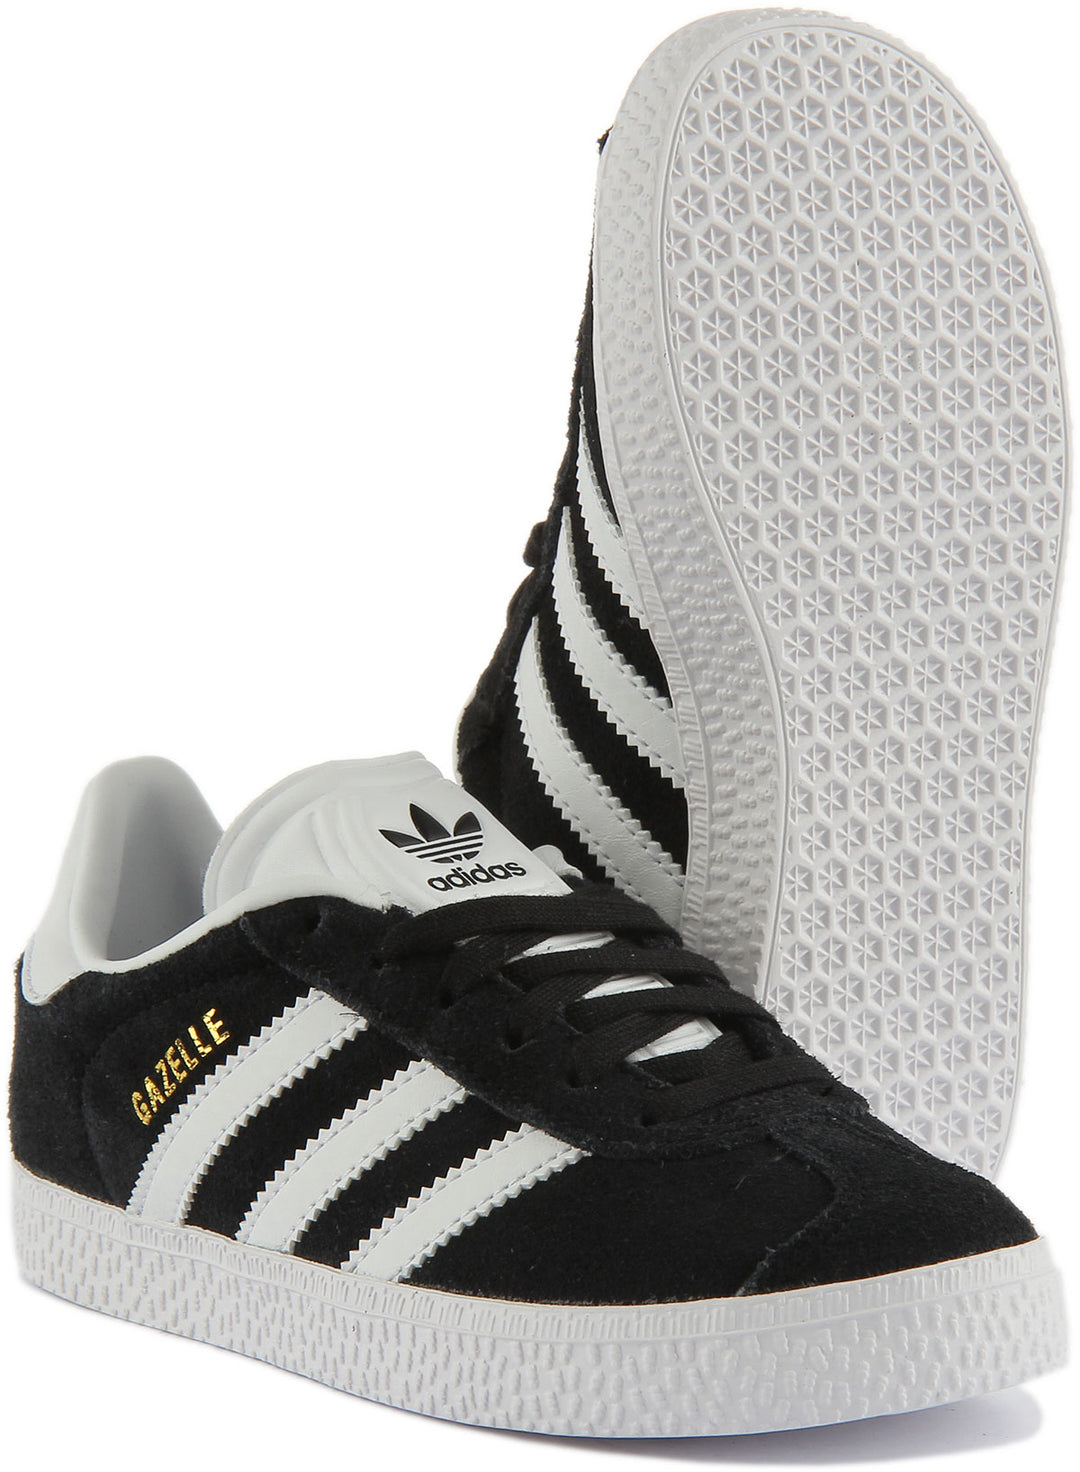 Adidas Gazelle C Zapatillas de ante con cordones para niños en negro blanco